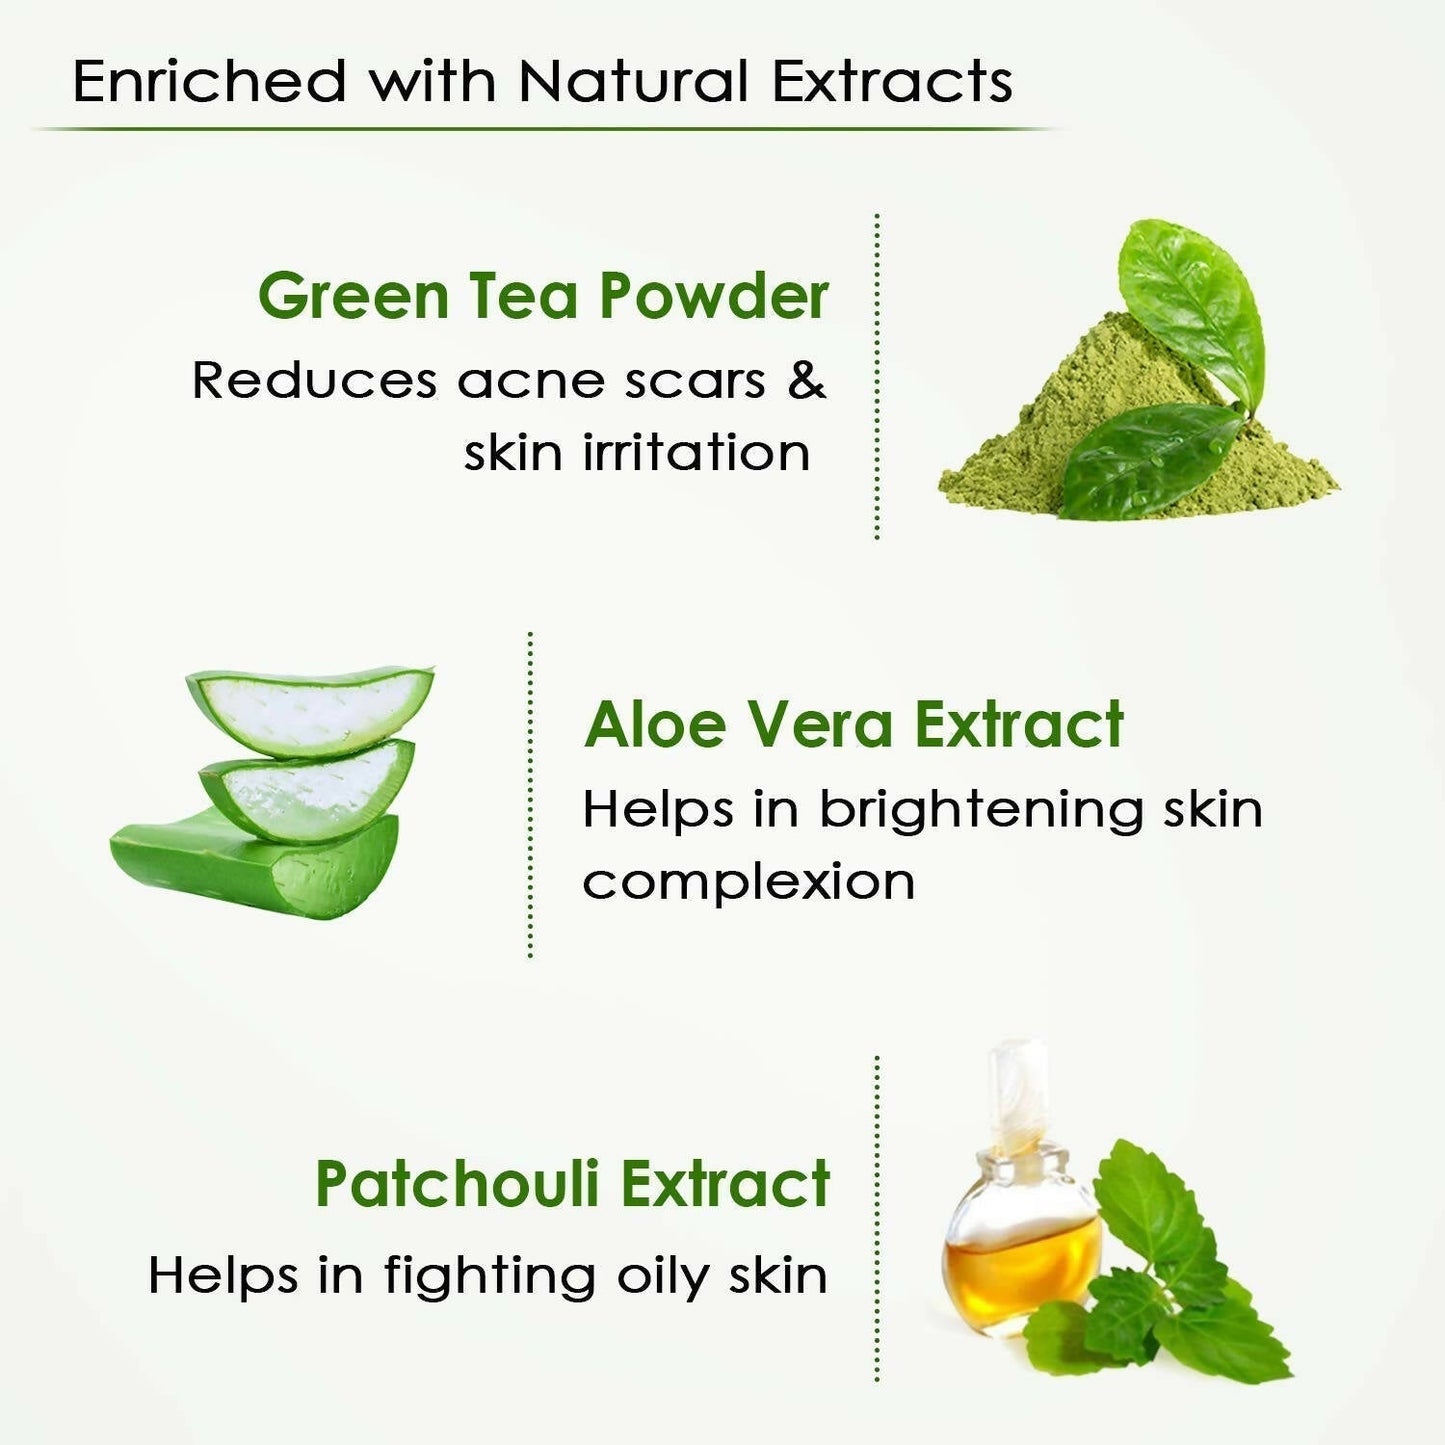 NutriGlow Green Tea Facial Kit